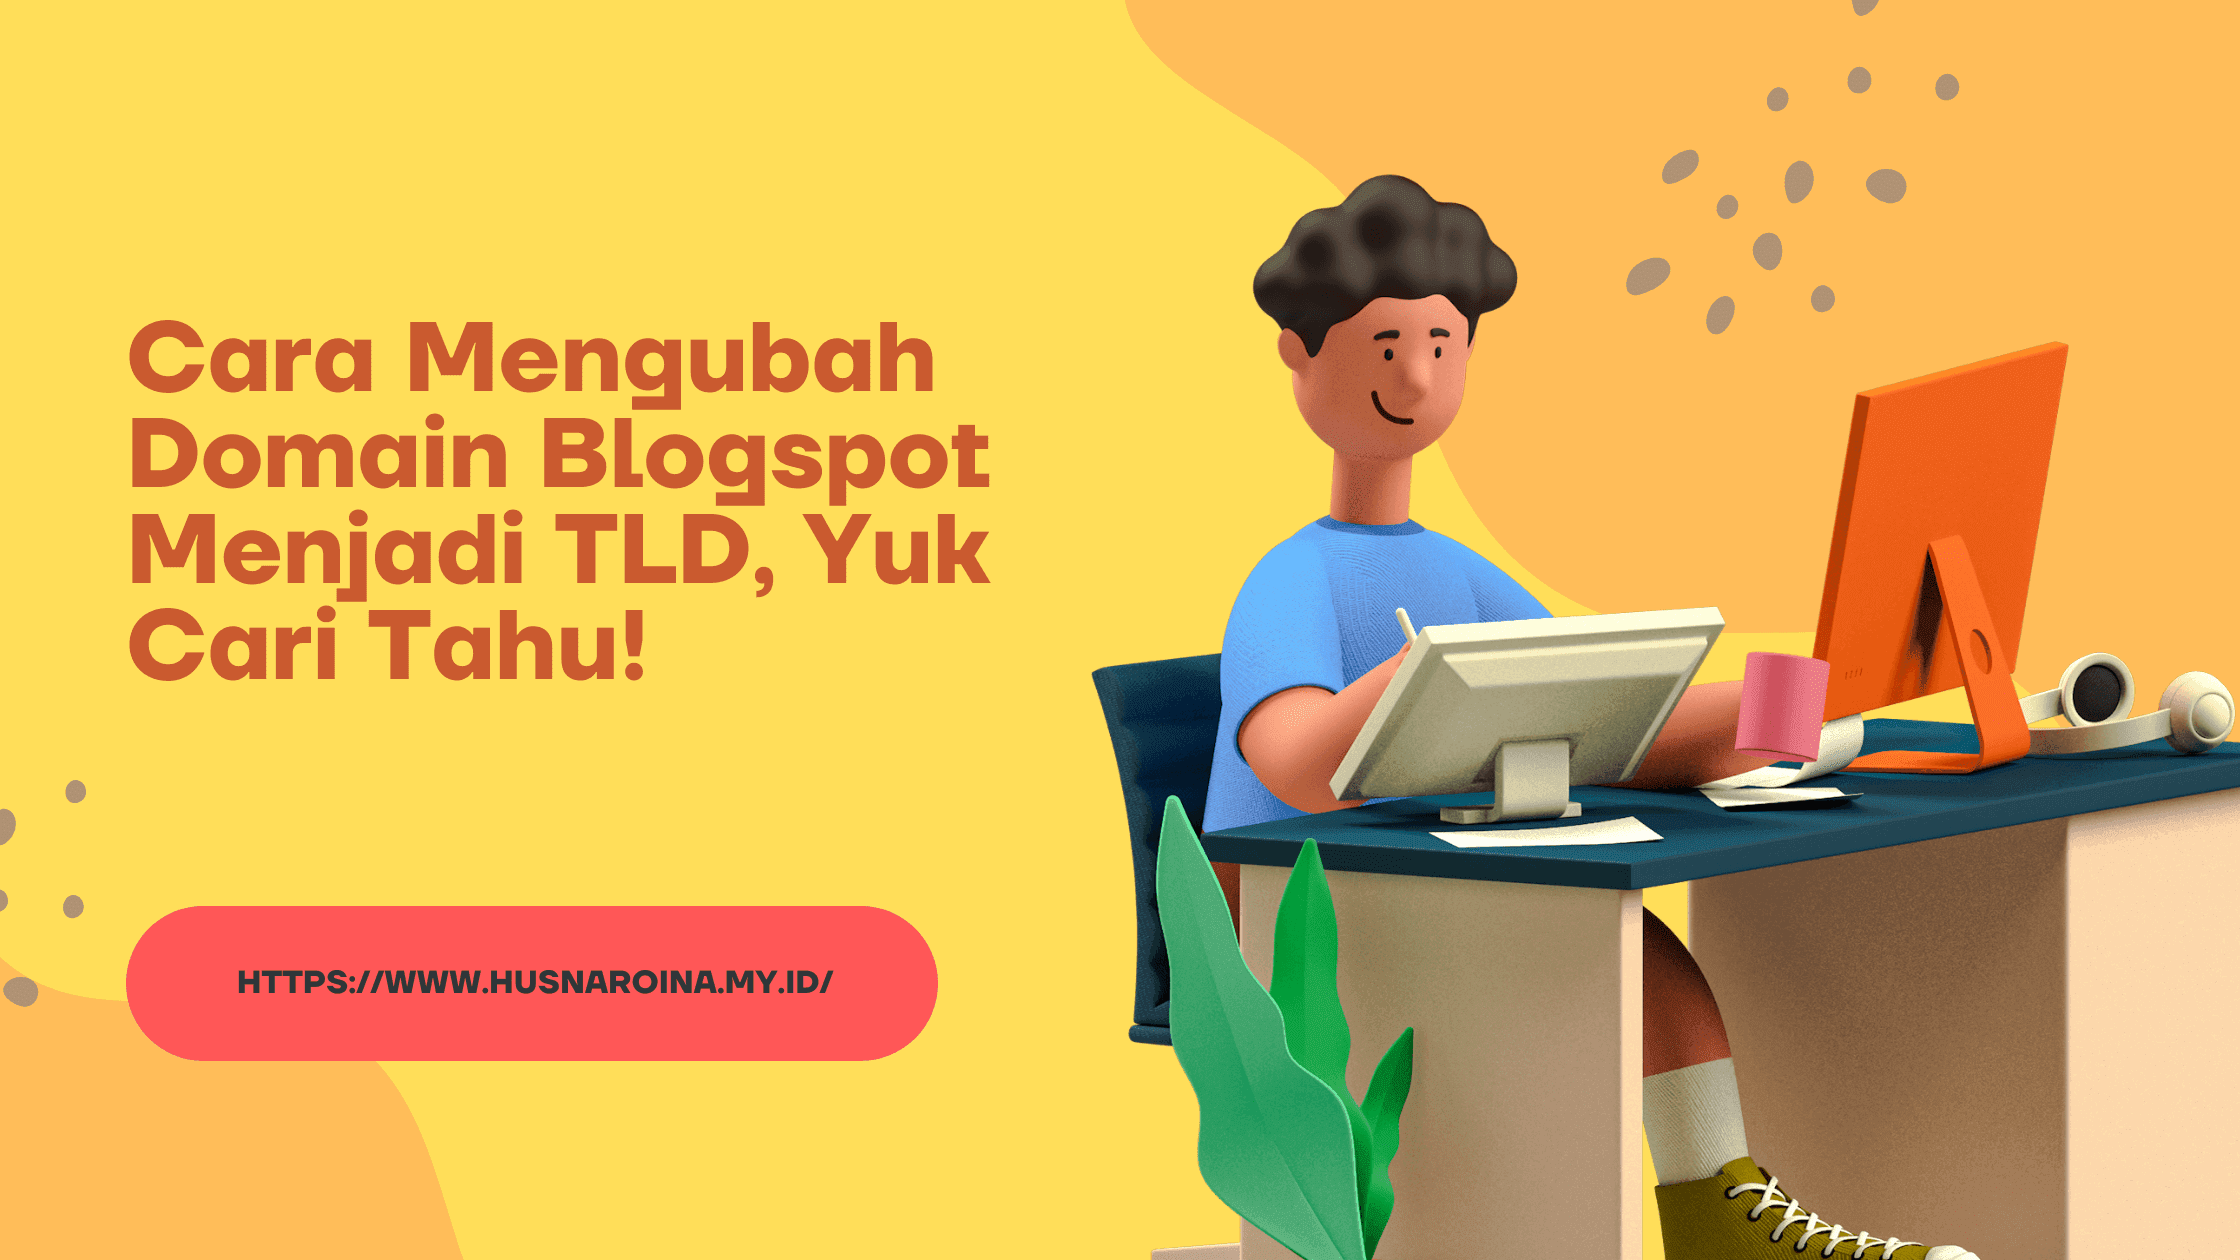 Cara Mengubah Domain Blogspot Menjadi TLD, Yuk Cari Tahu!